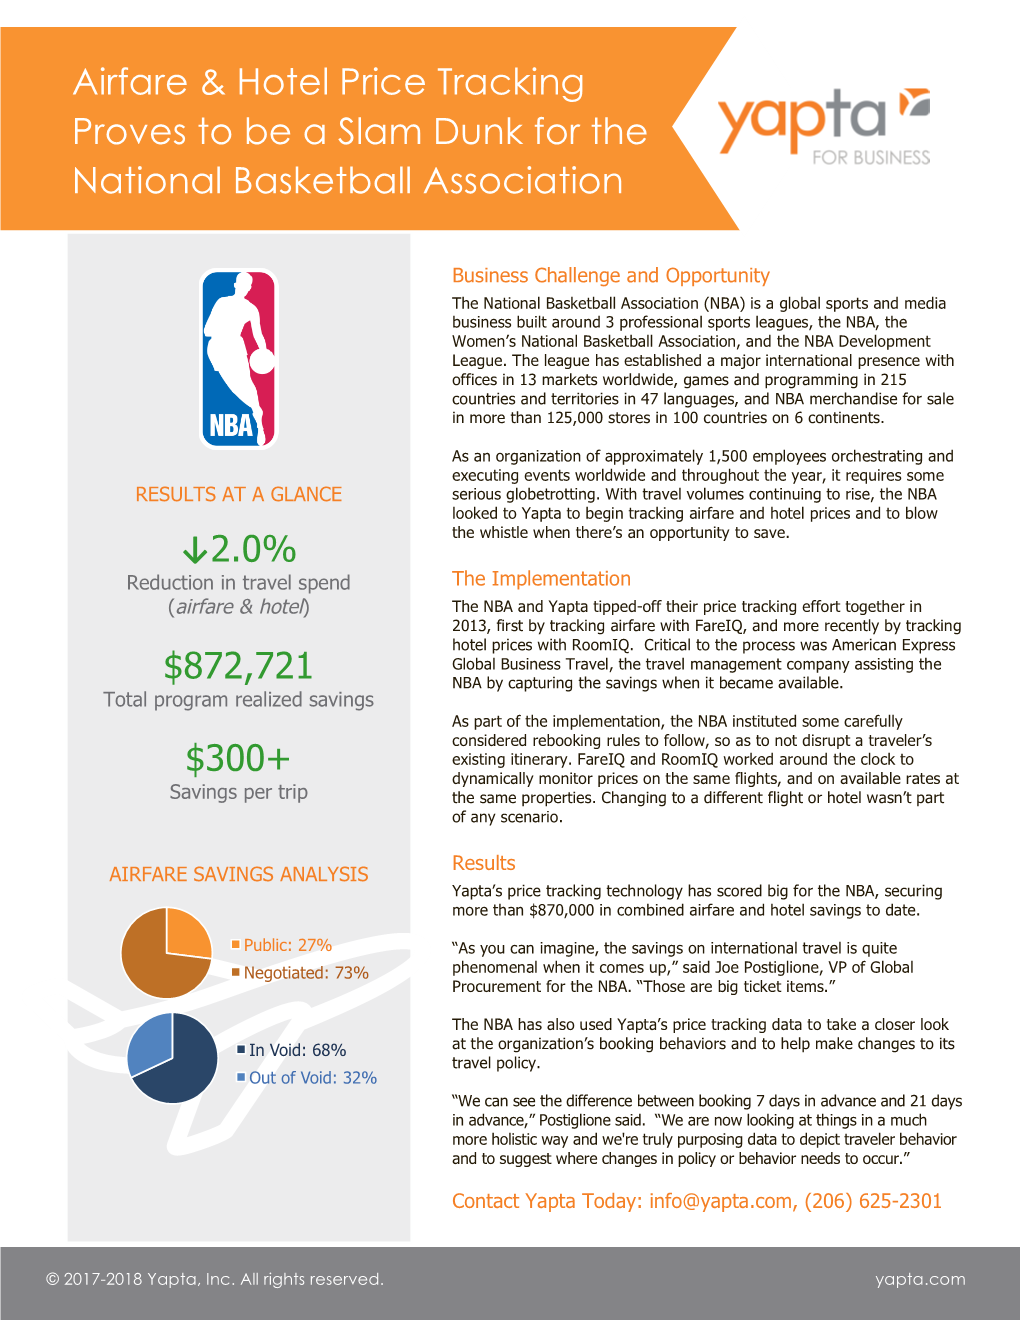 NBA Case Study